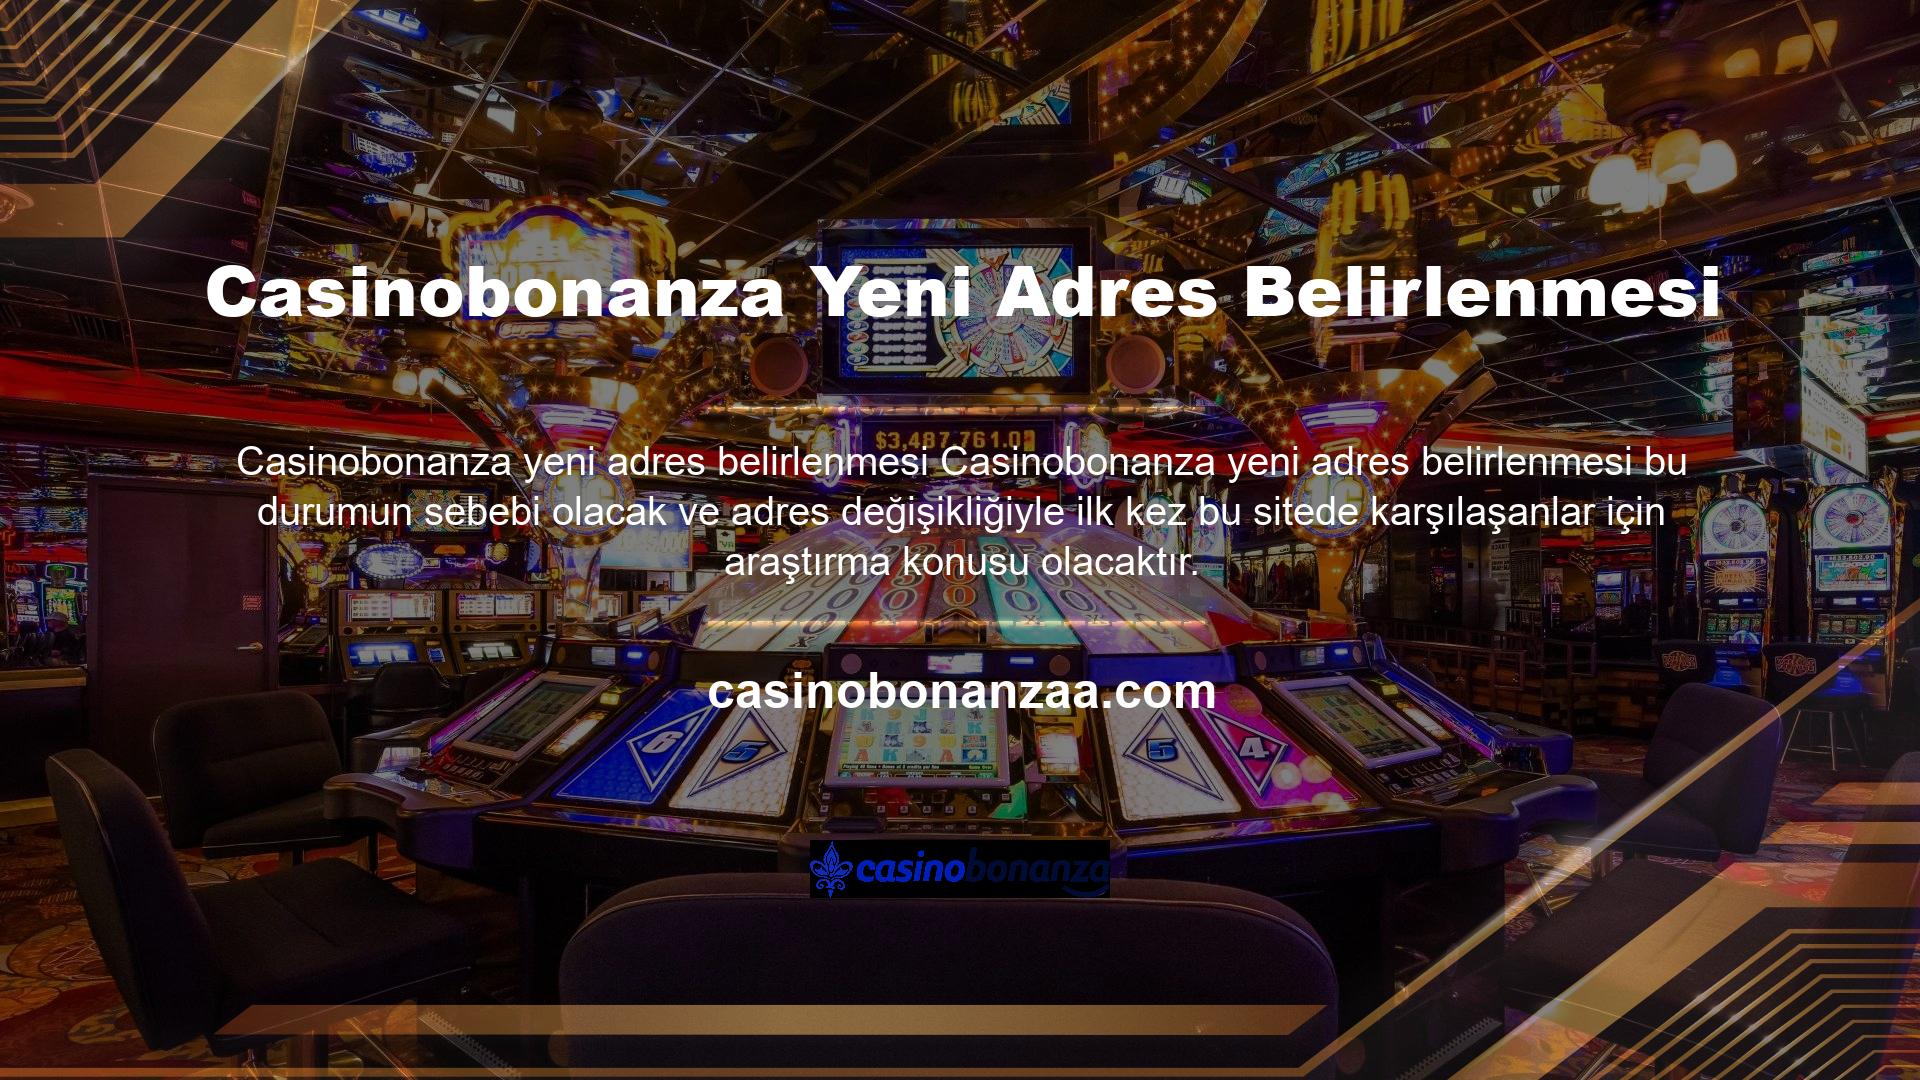 Casinobonanza yeni adresinin neden seçildiğini araştıranlar, araştırmalarının ardından BTK ismine rastladı